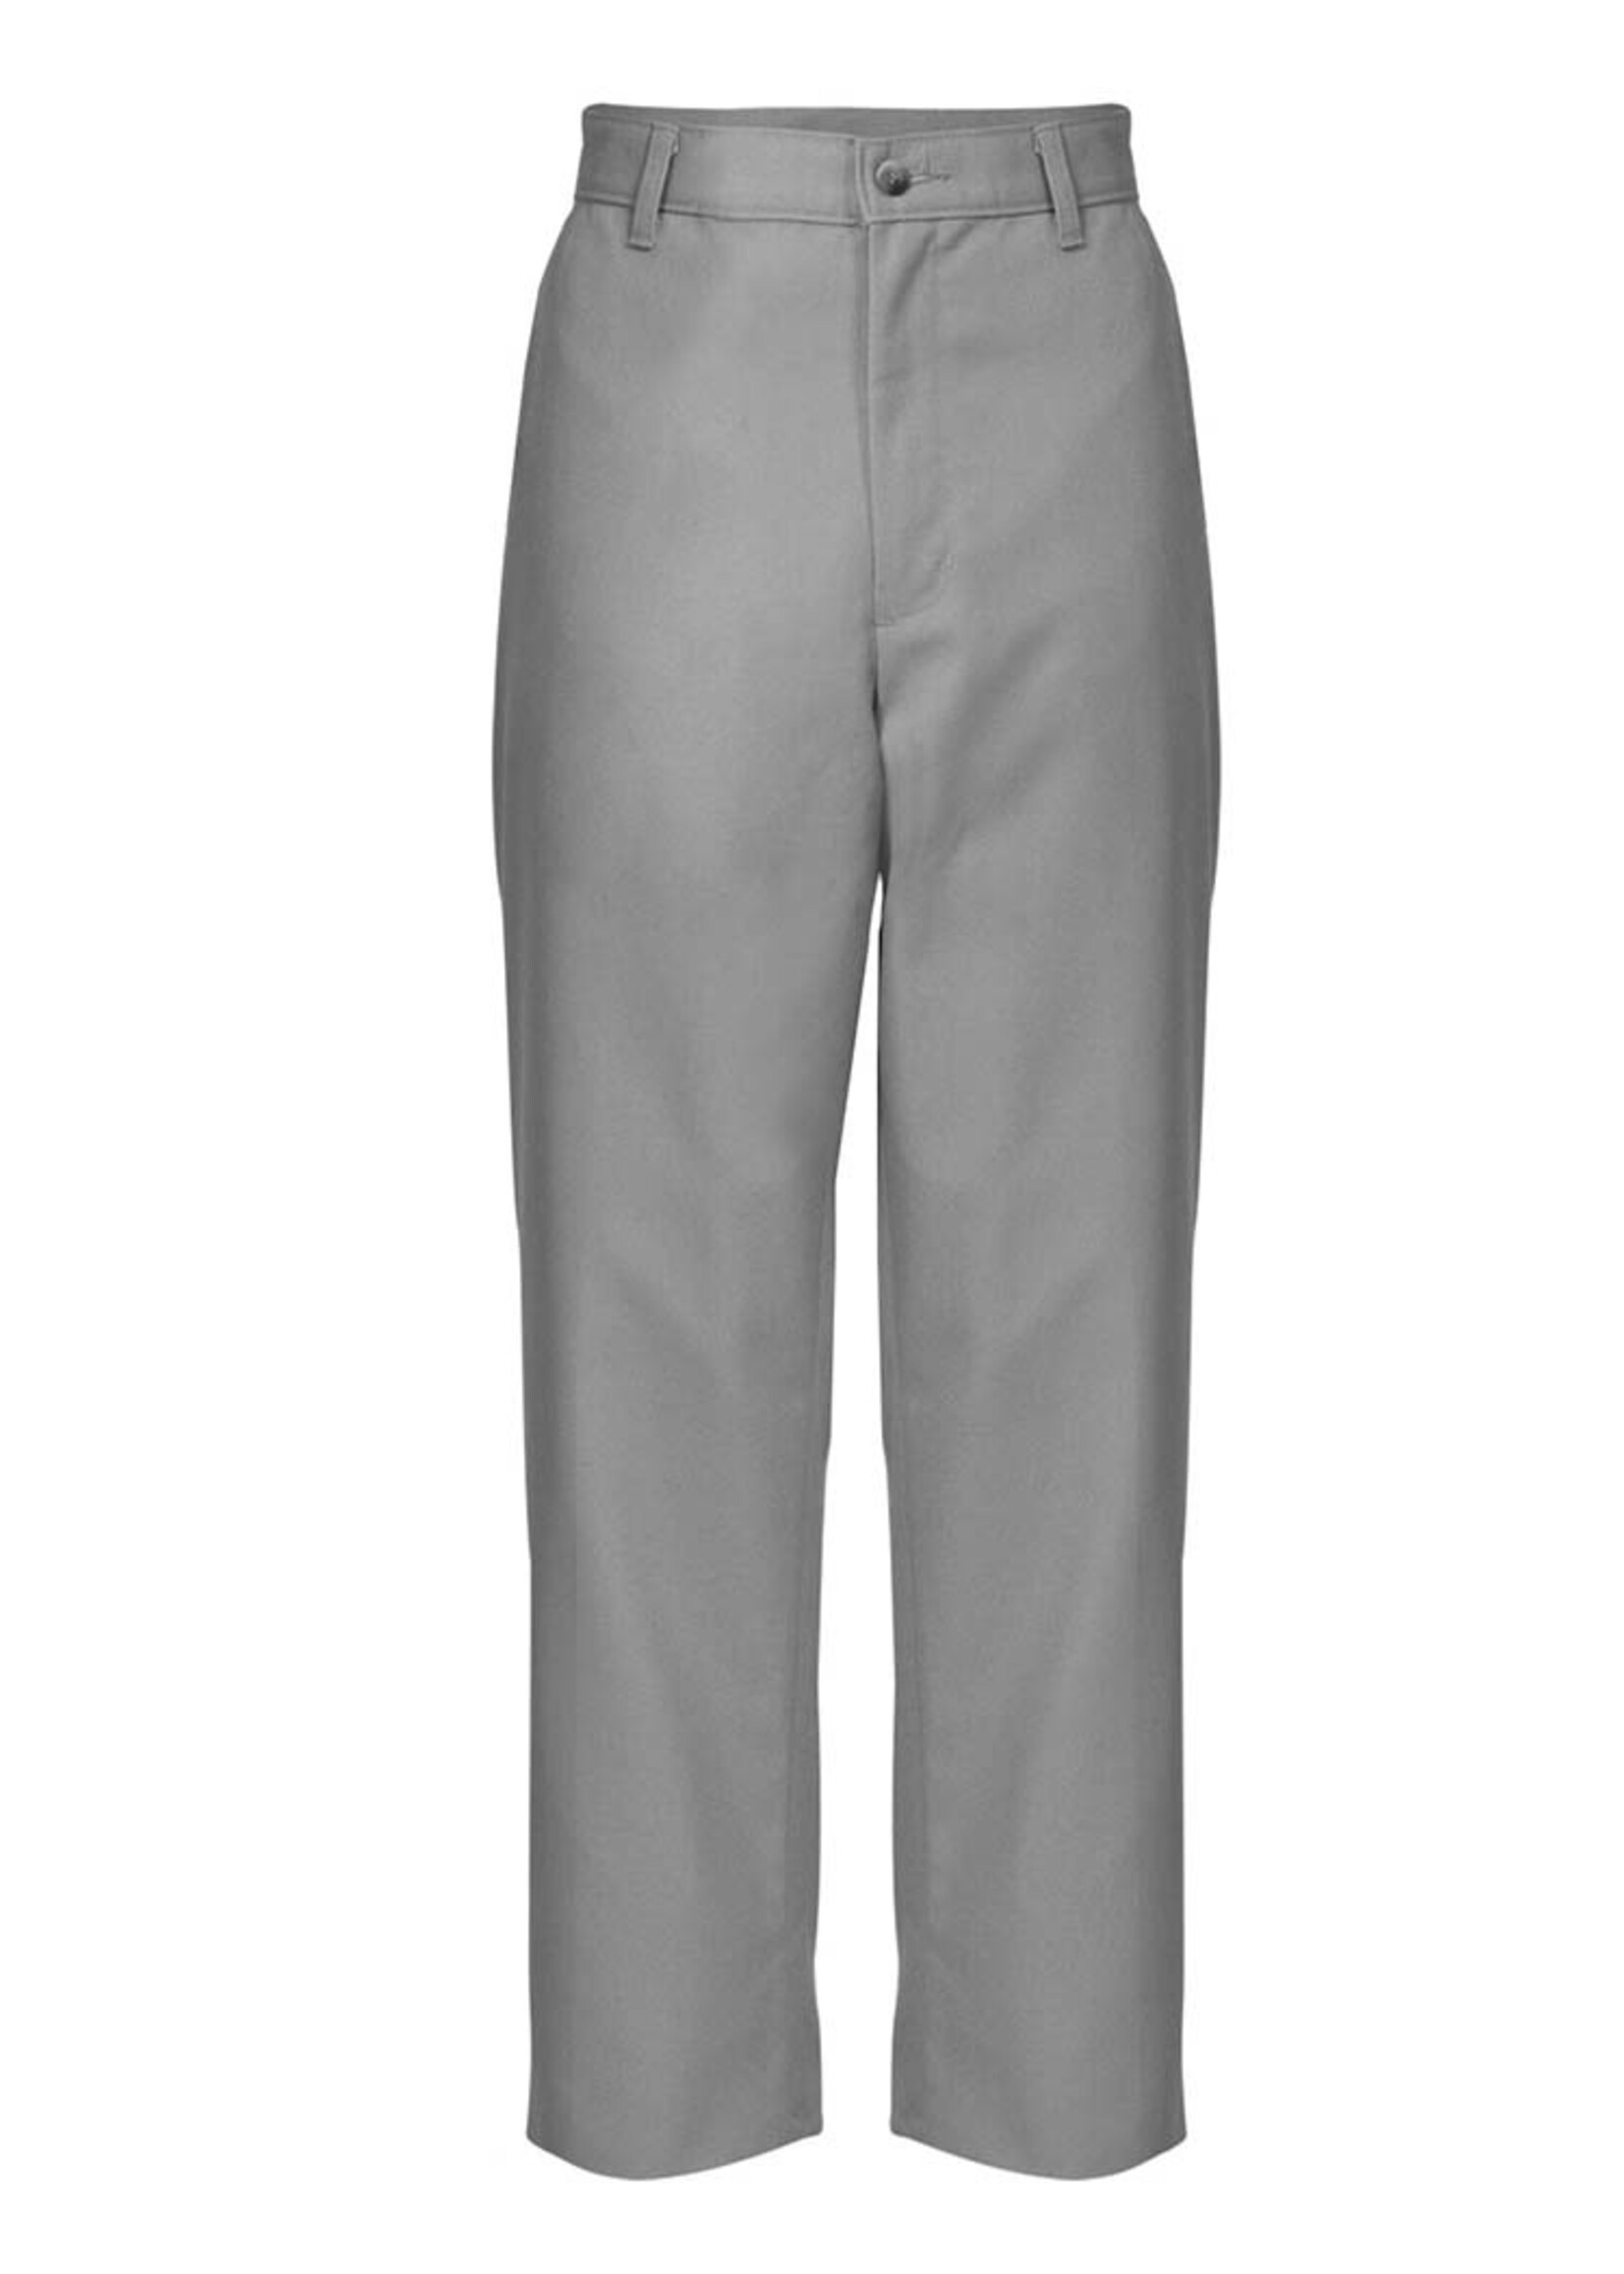 Dickies occupational wear GREY work pants NEW | Brooks Gov Surplus